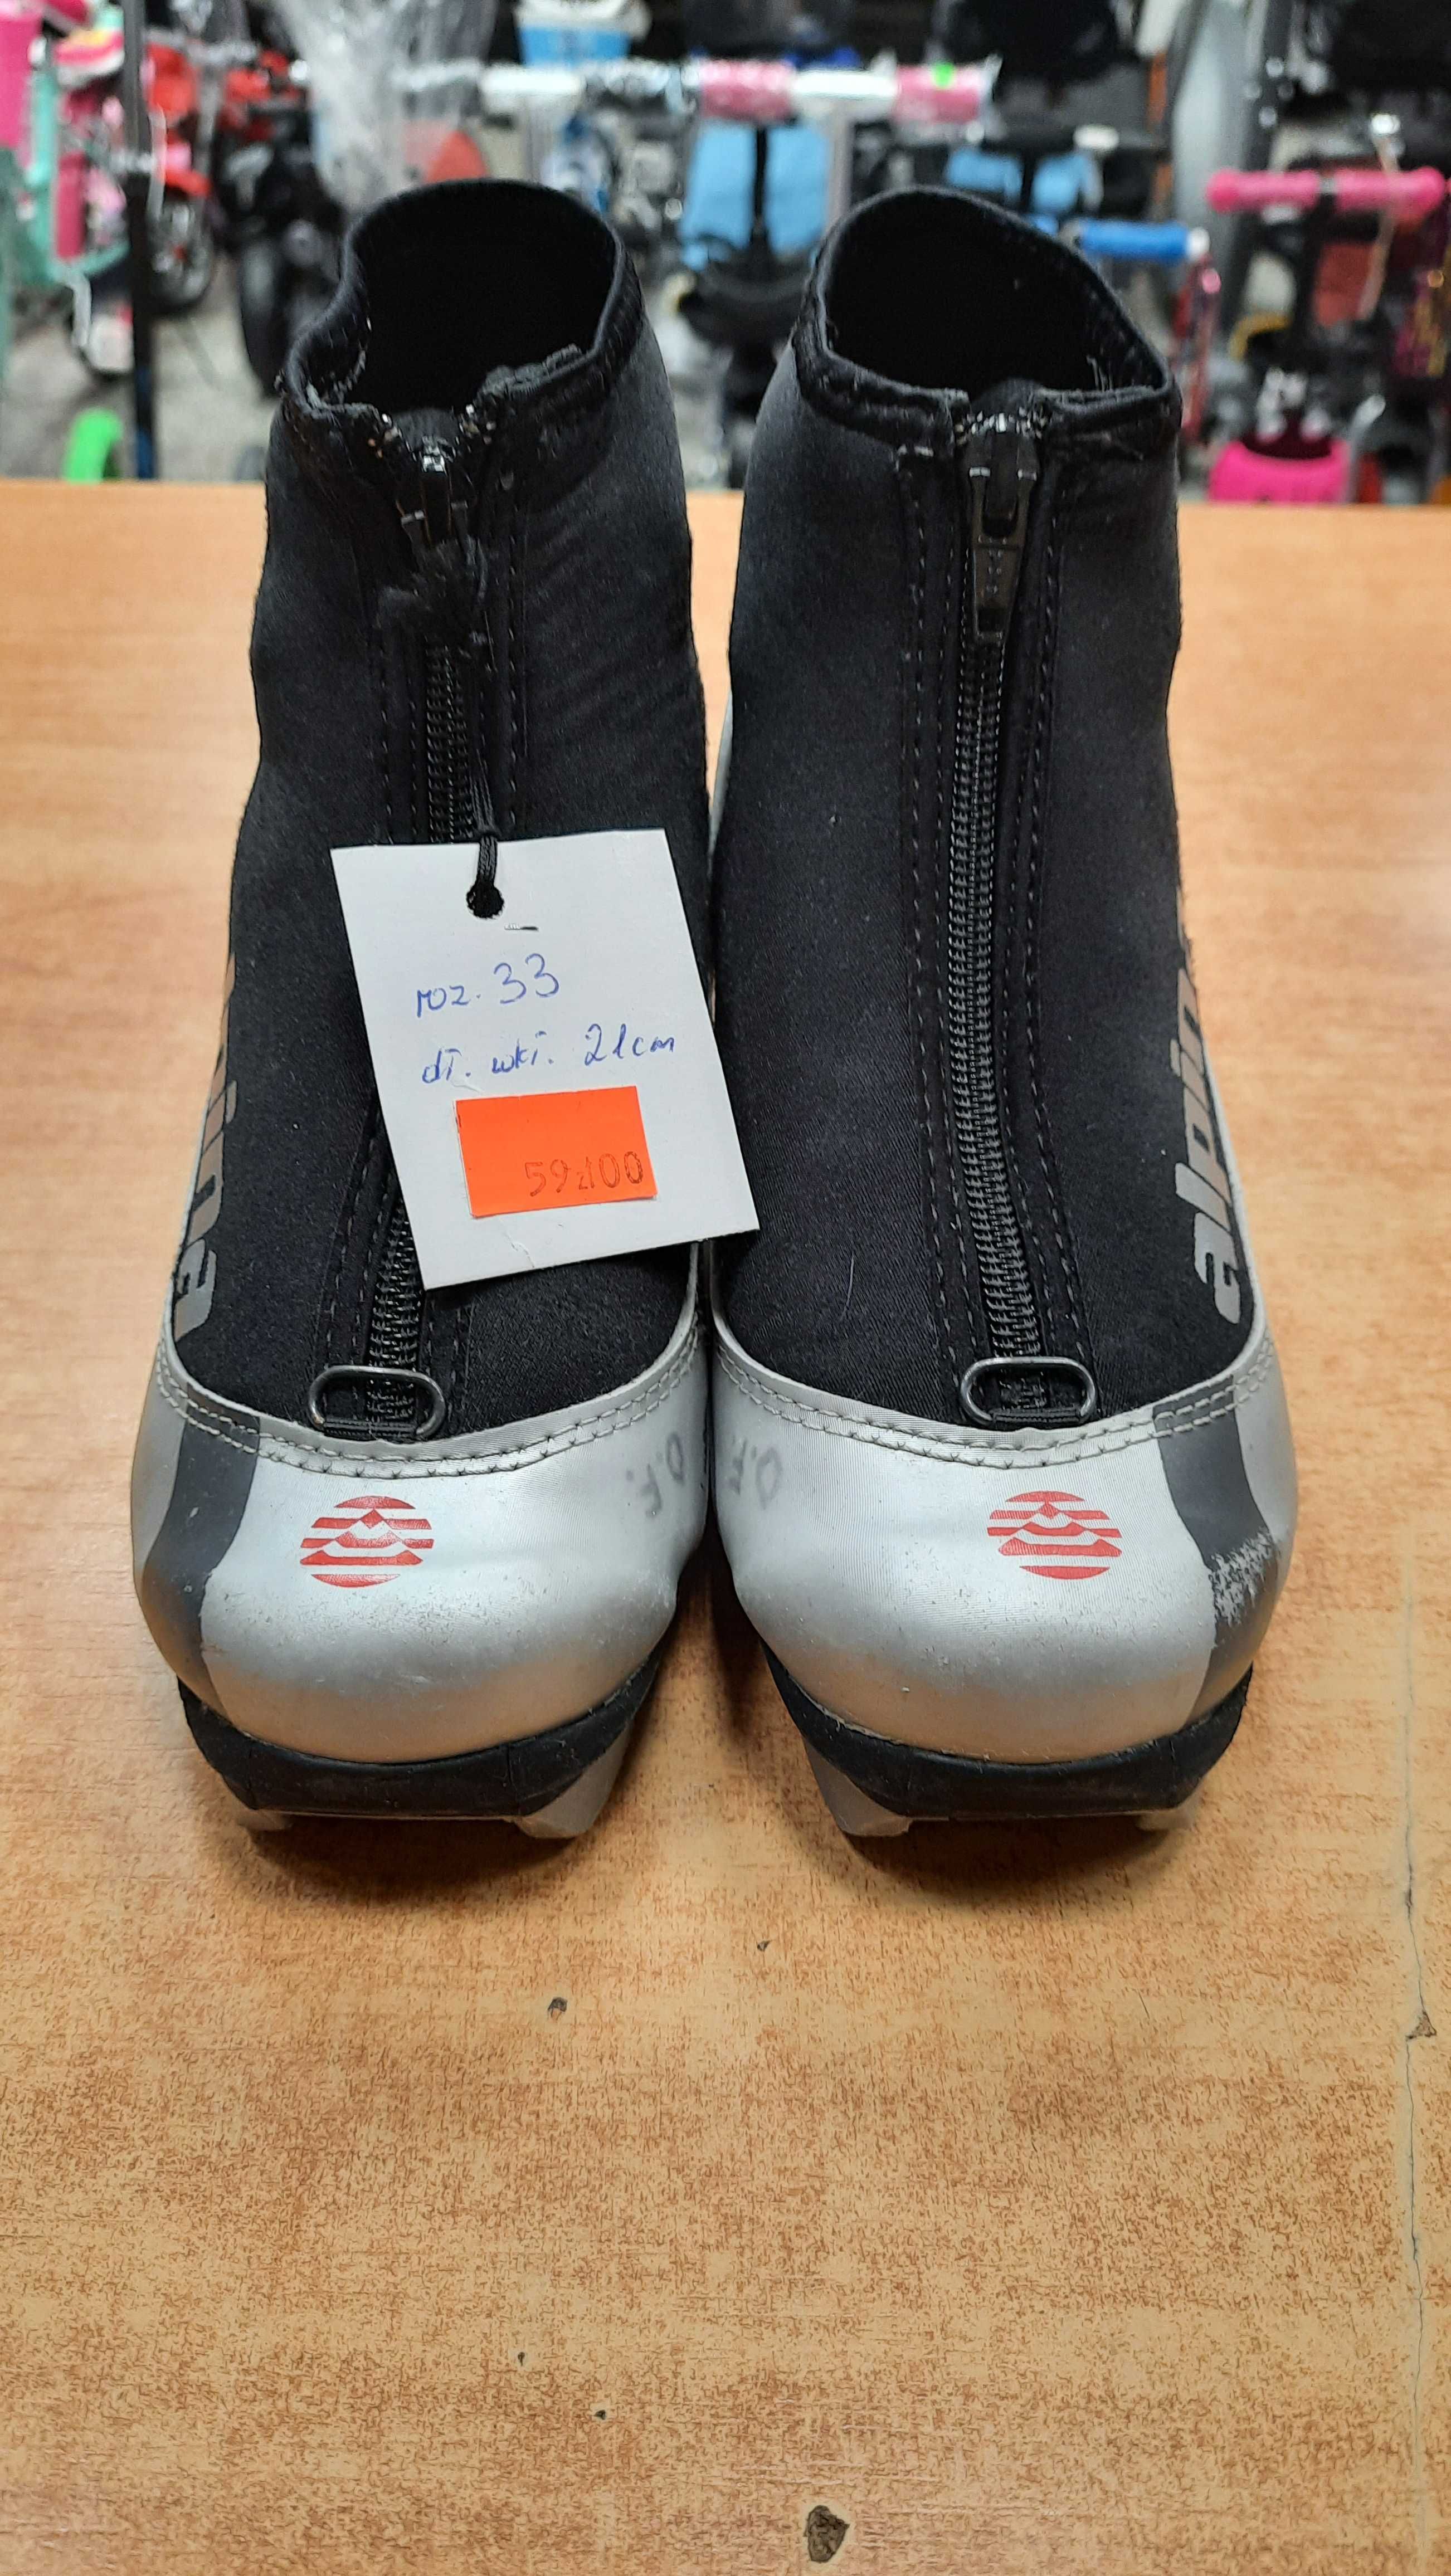 Buty do nart biegowych ALPINA ( rozmiar 33 )